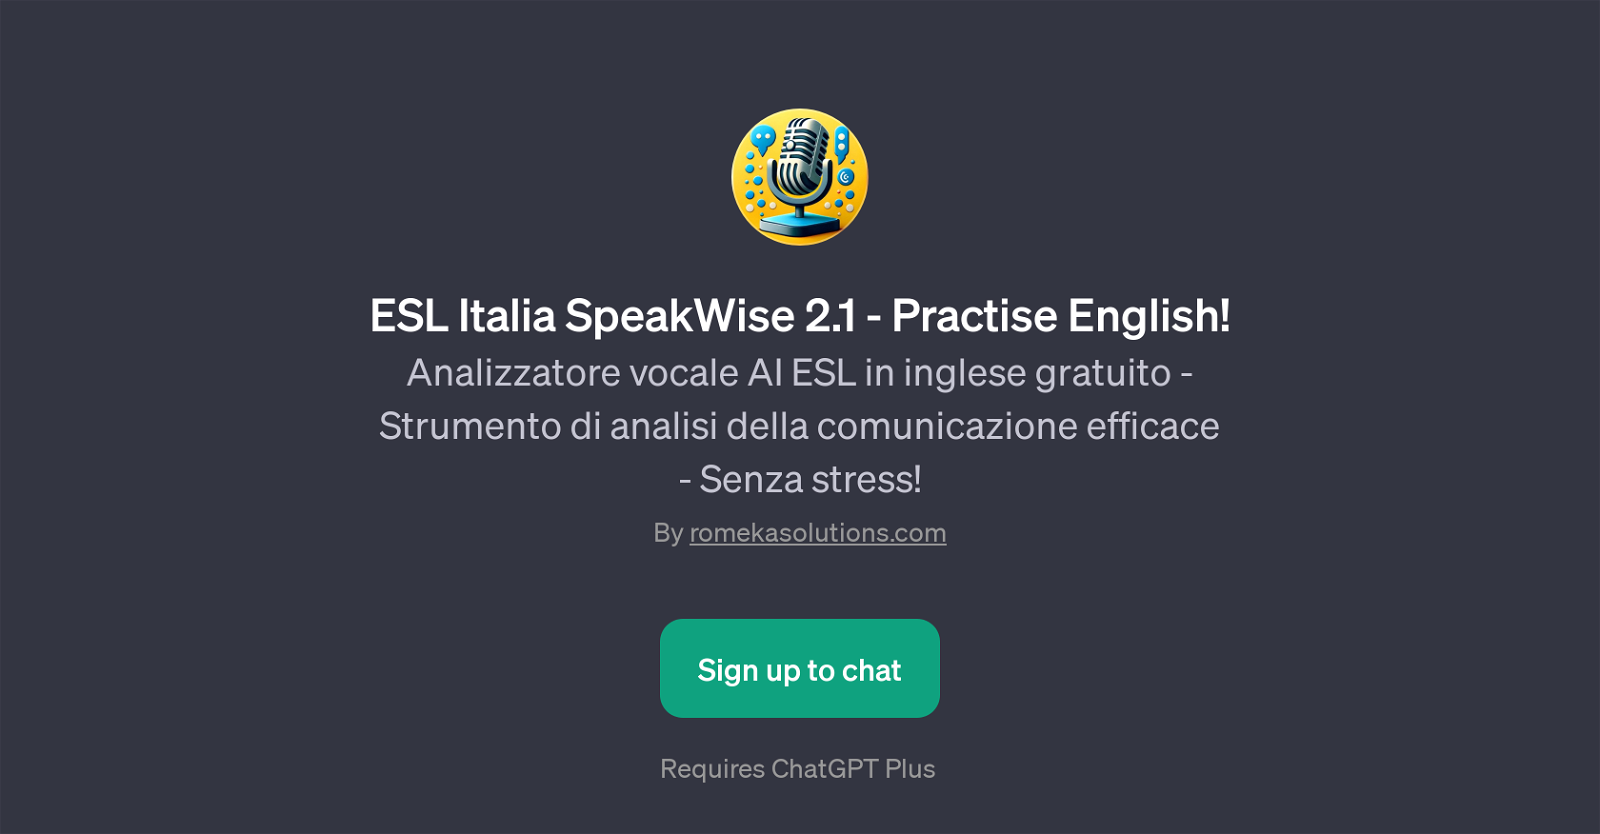 ESL Italia SpeakWise 2.1 website